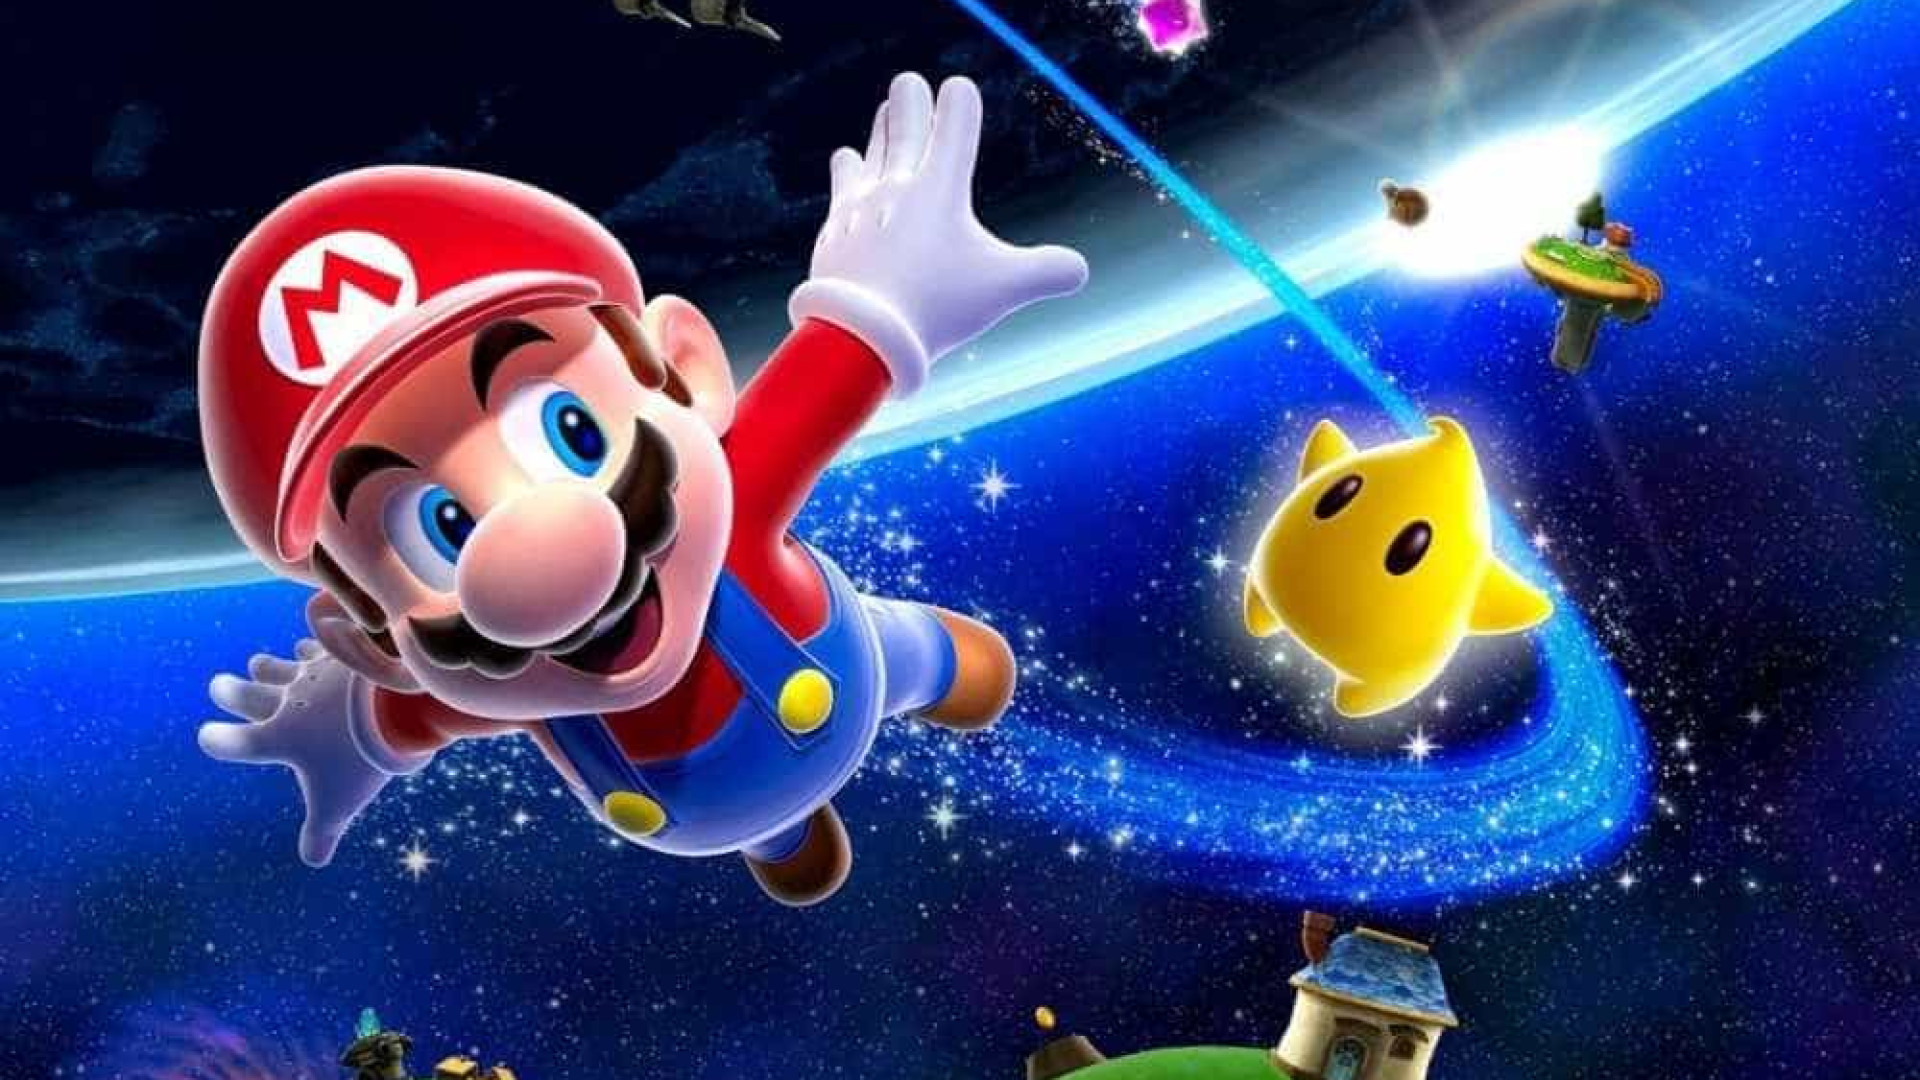 Jogar 'Super Mario' ajuda a prevenir a demência, revela estudo